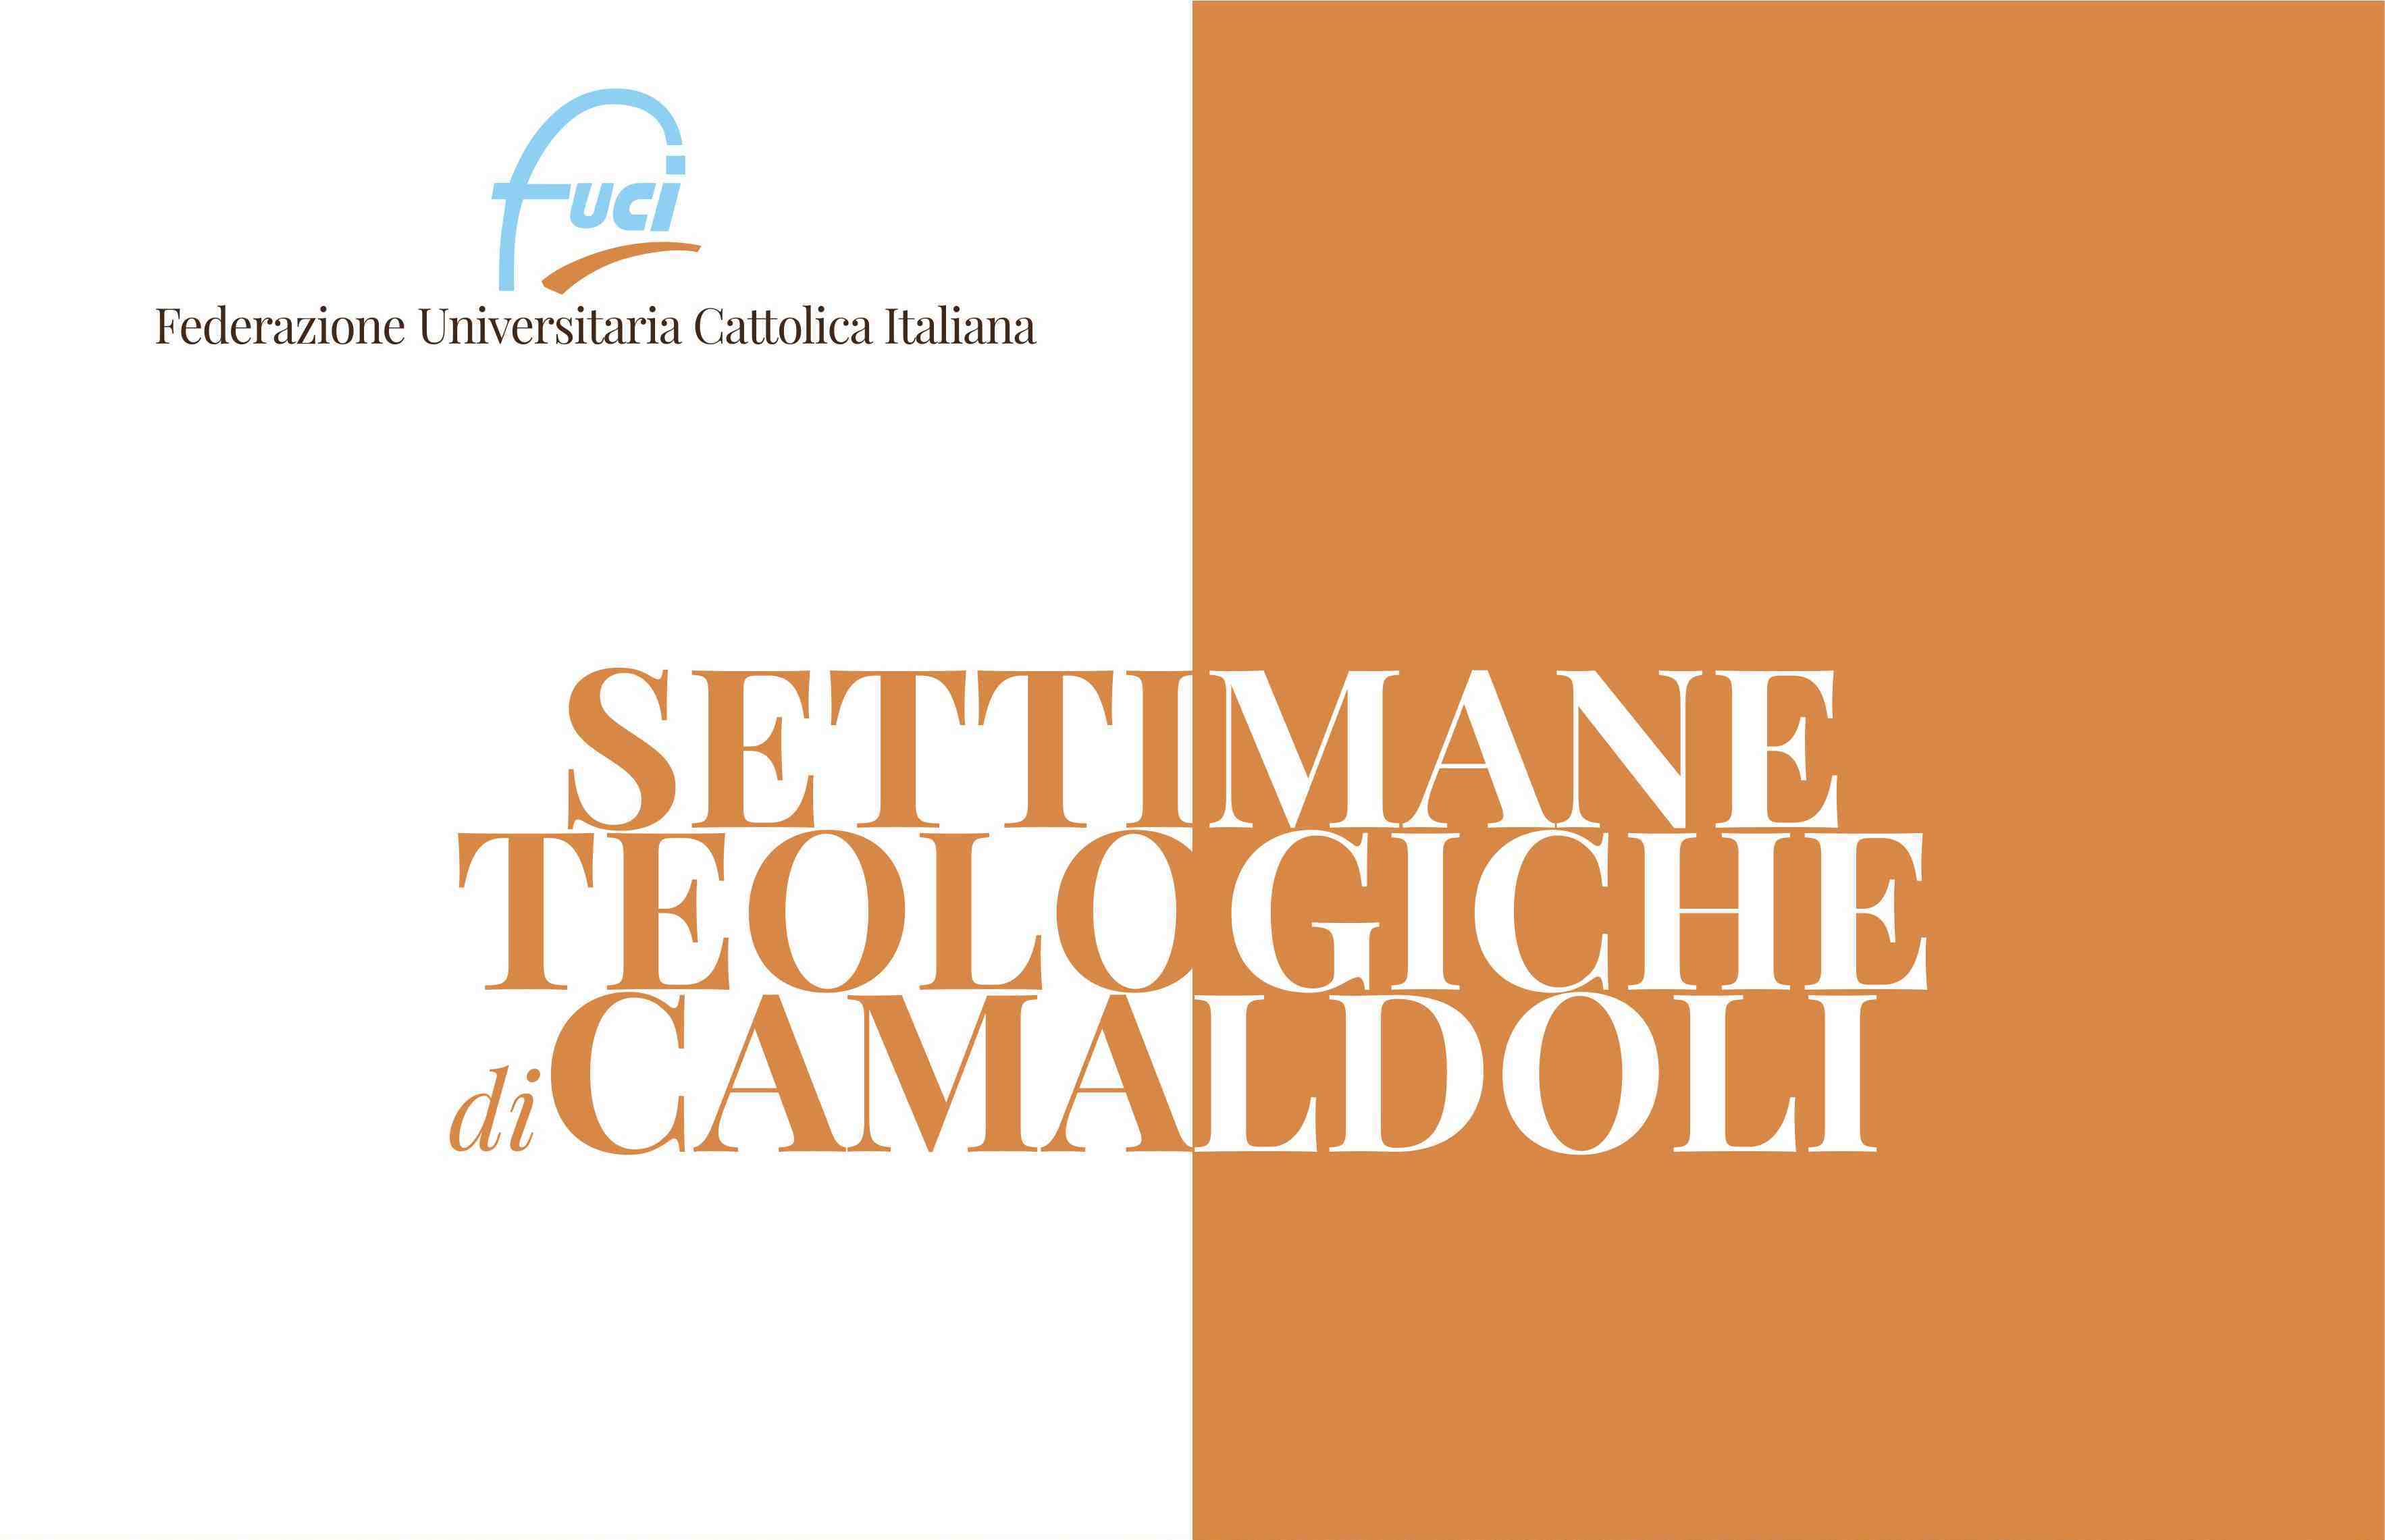 A Camaldoli con la FUCI per le settimane teologiche - Azione Cattolica  Vicentina